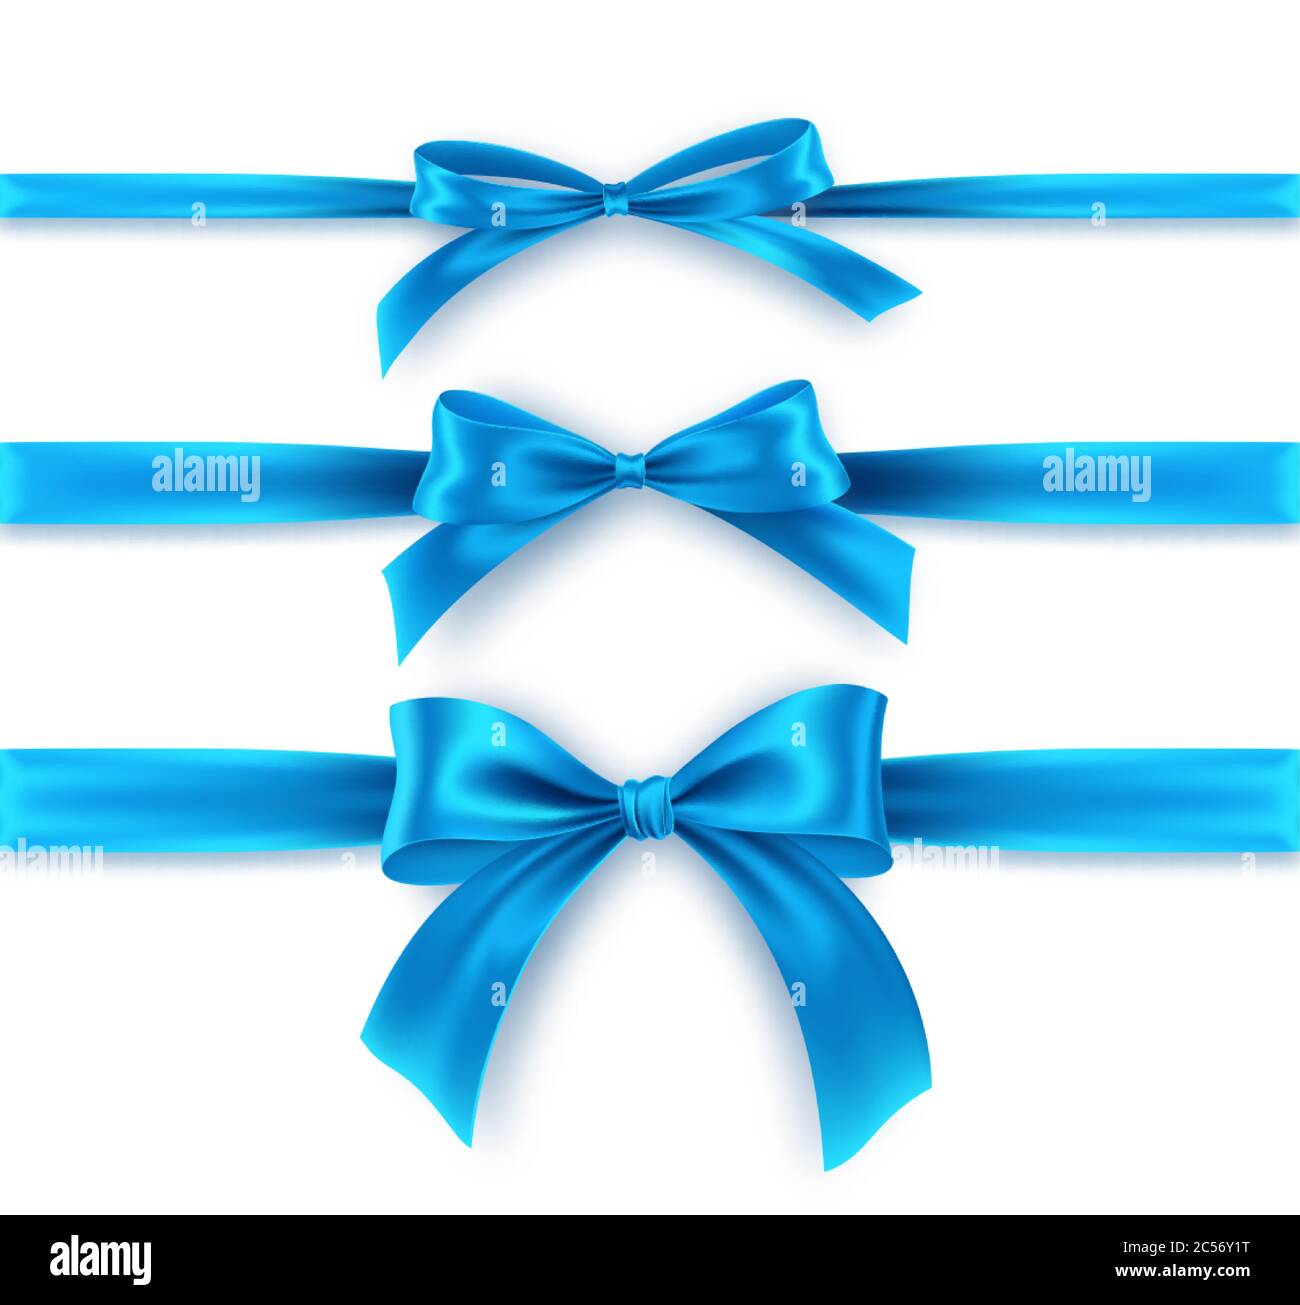 Impostare Bow e Ribbon blu su sfondo bianco. Archetto blu realistico per il design della decorazione cornice per le vacanze, bordo. Illustrazione vettoriale Illustrazione Vettoriale